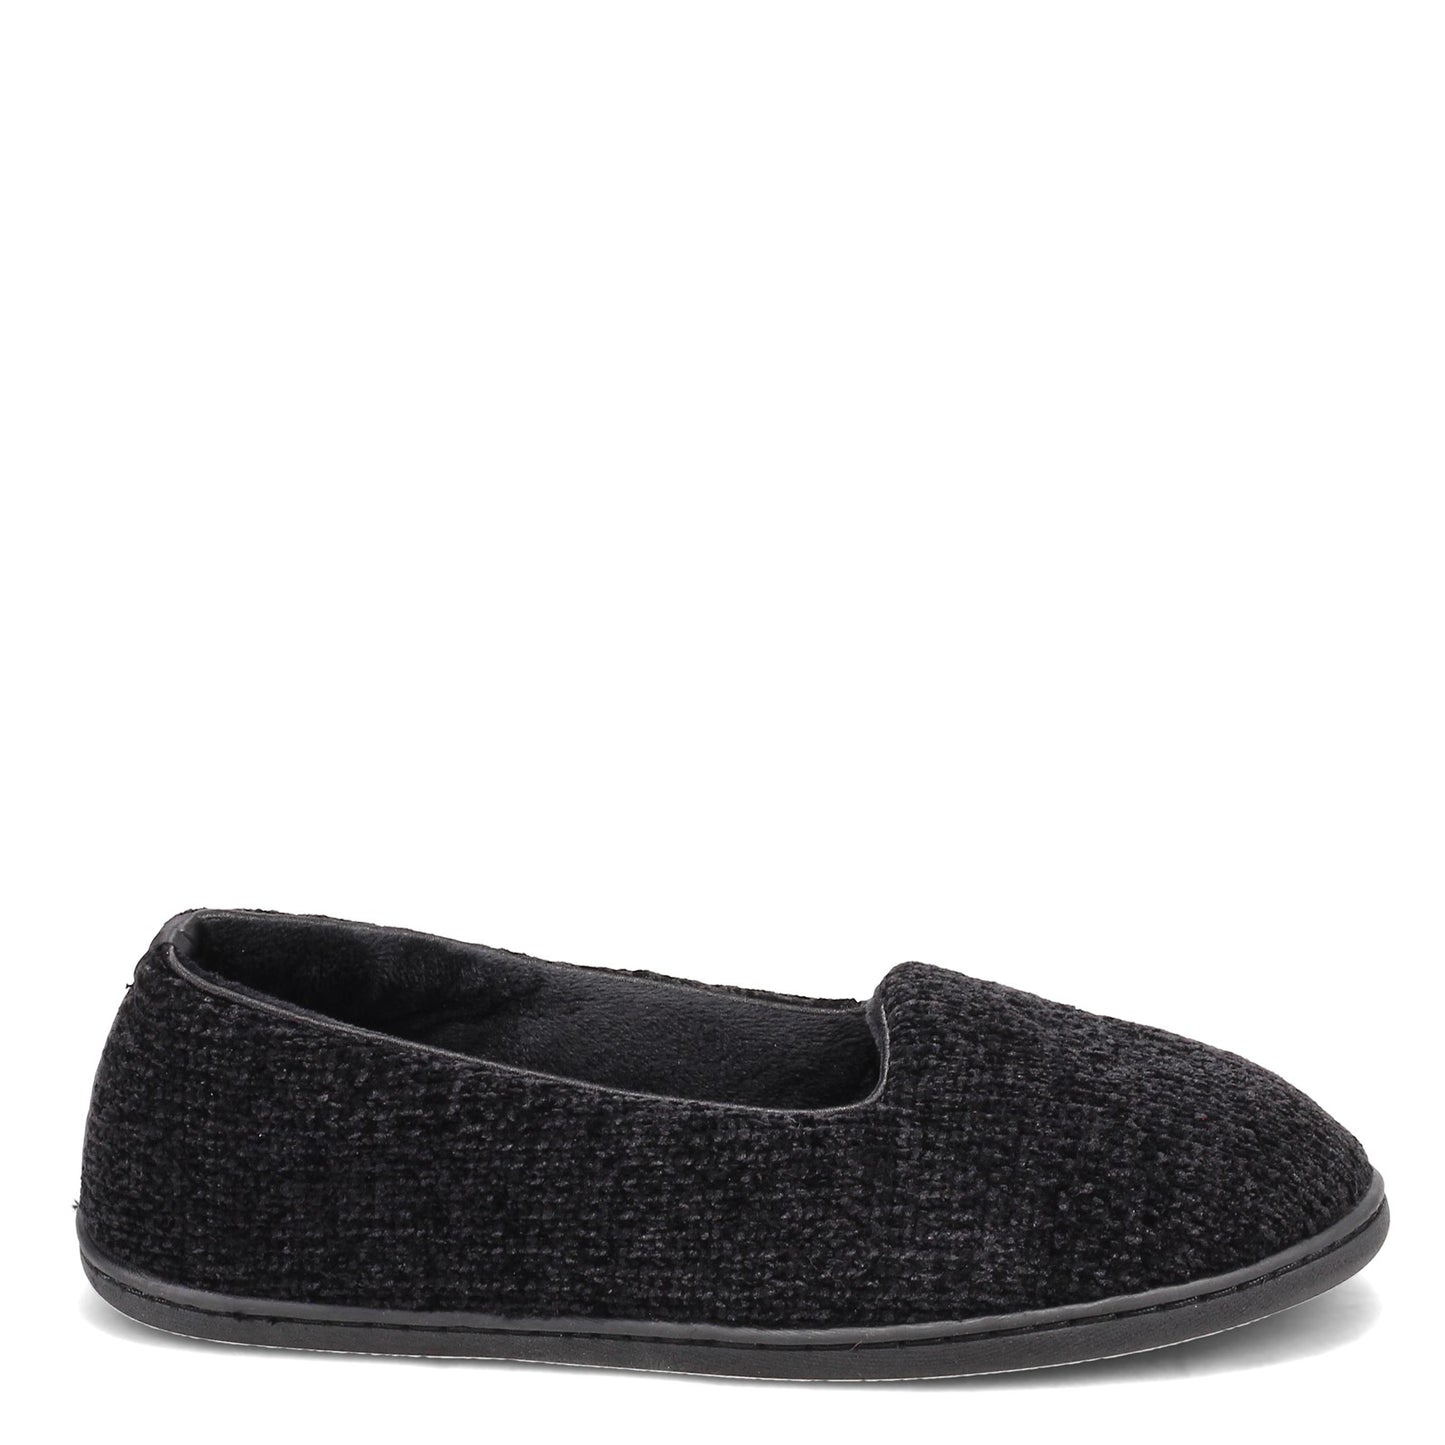 Peltz Shoes  Women's Dearfoam Rebecca Slipper BLACK CHENILLE 51005-00001